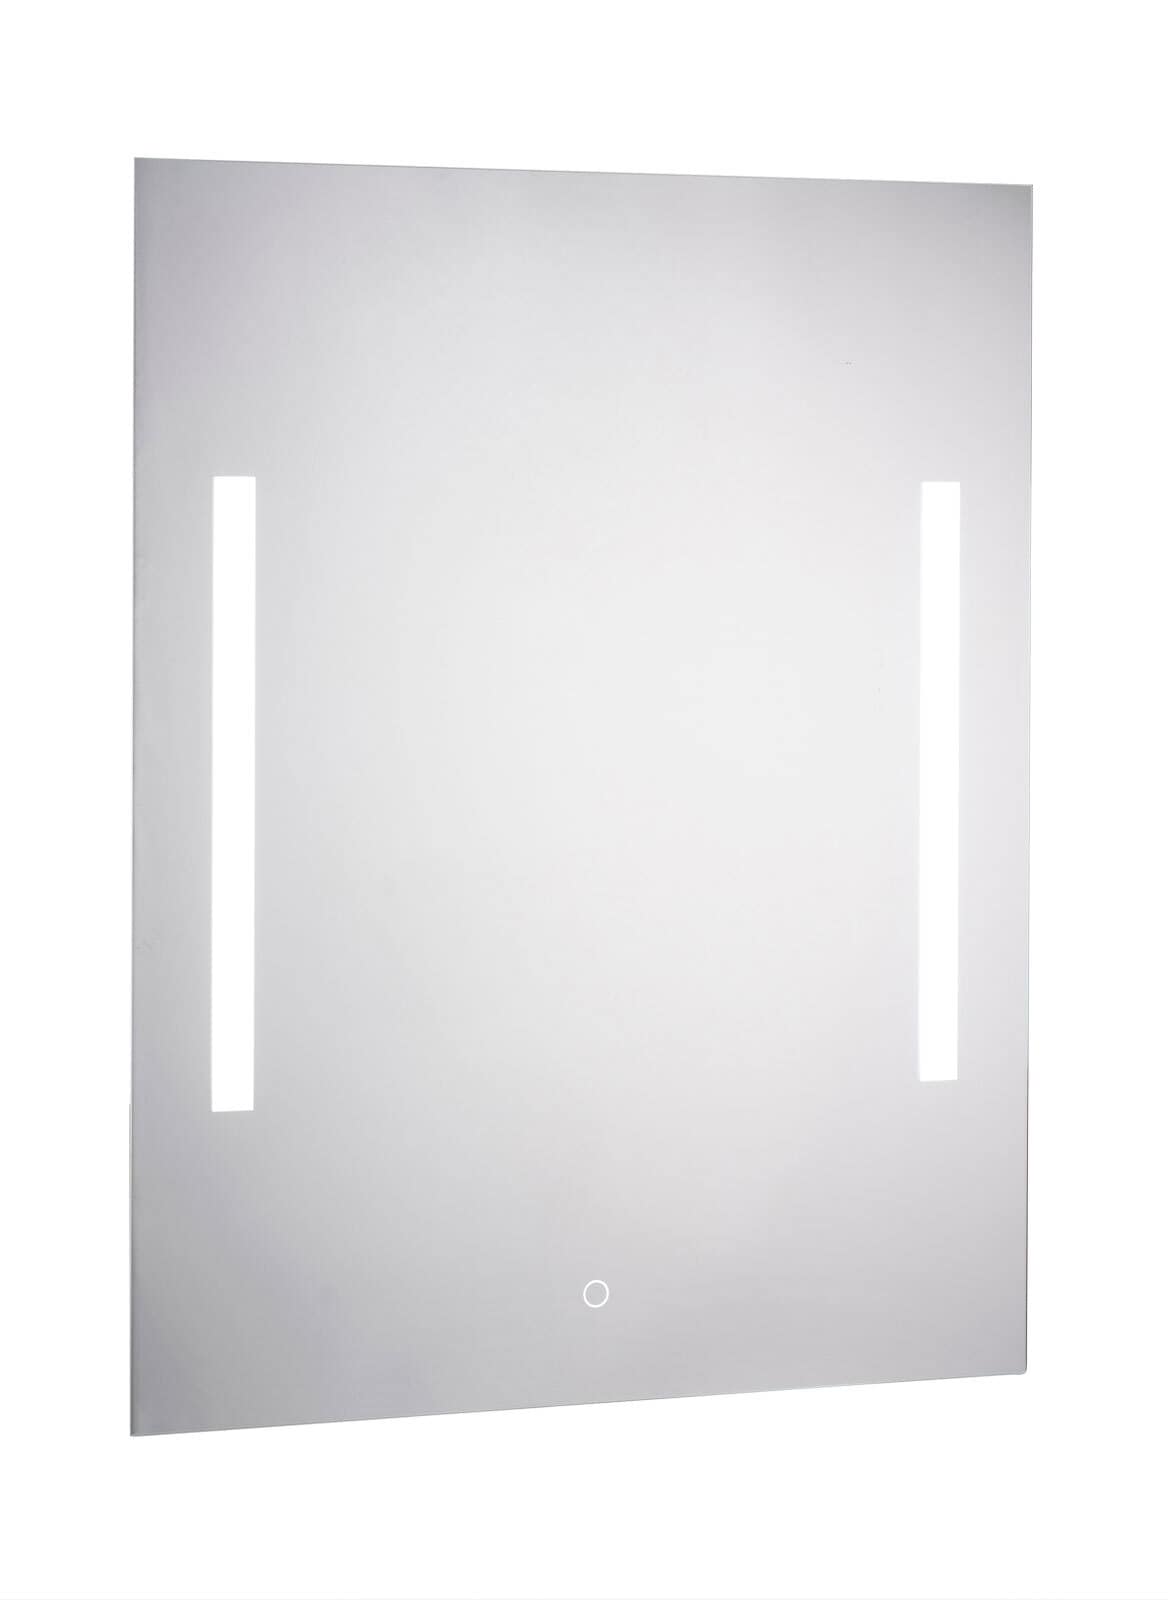 CASAVANTI Badspiegel beleuchtet mit LED 60 x 80 x 2,5 cm Spiegelglas 